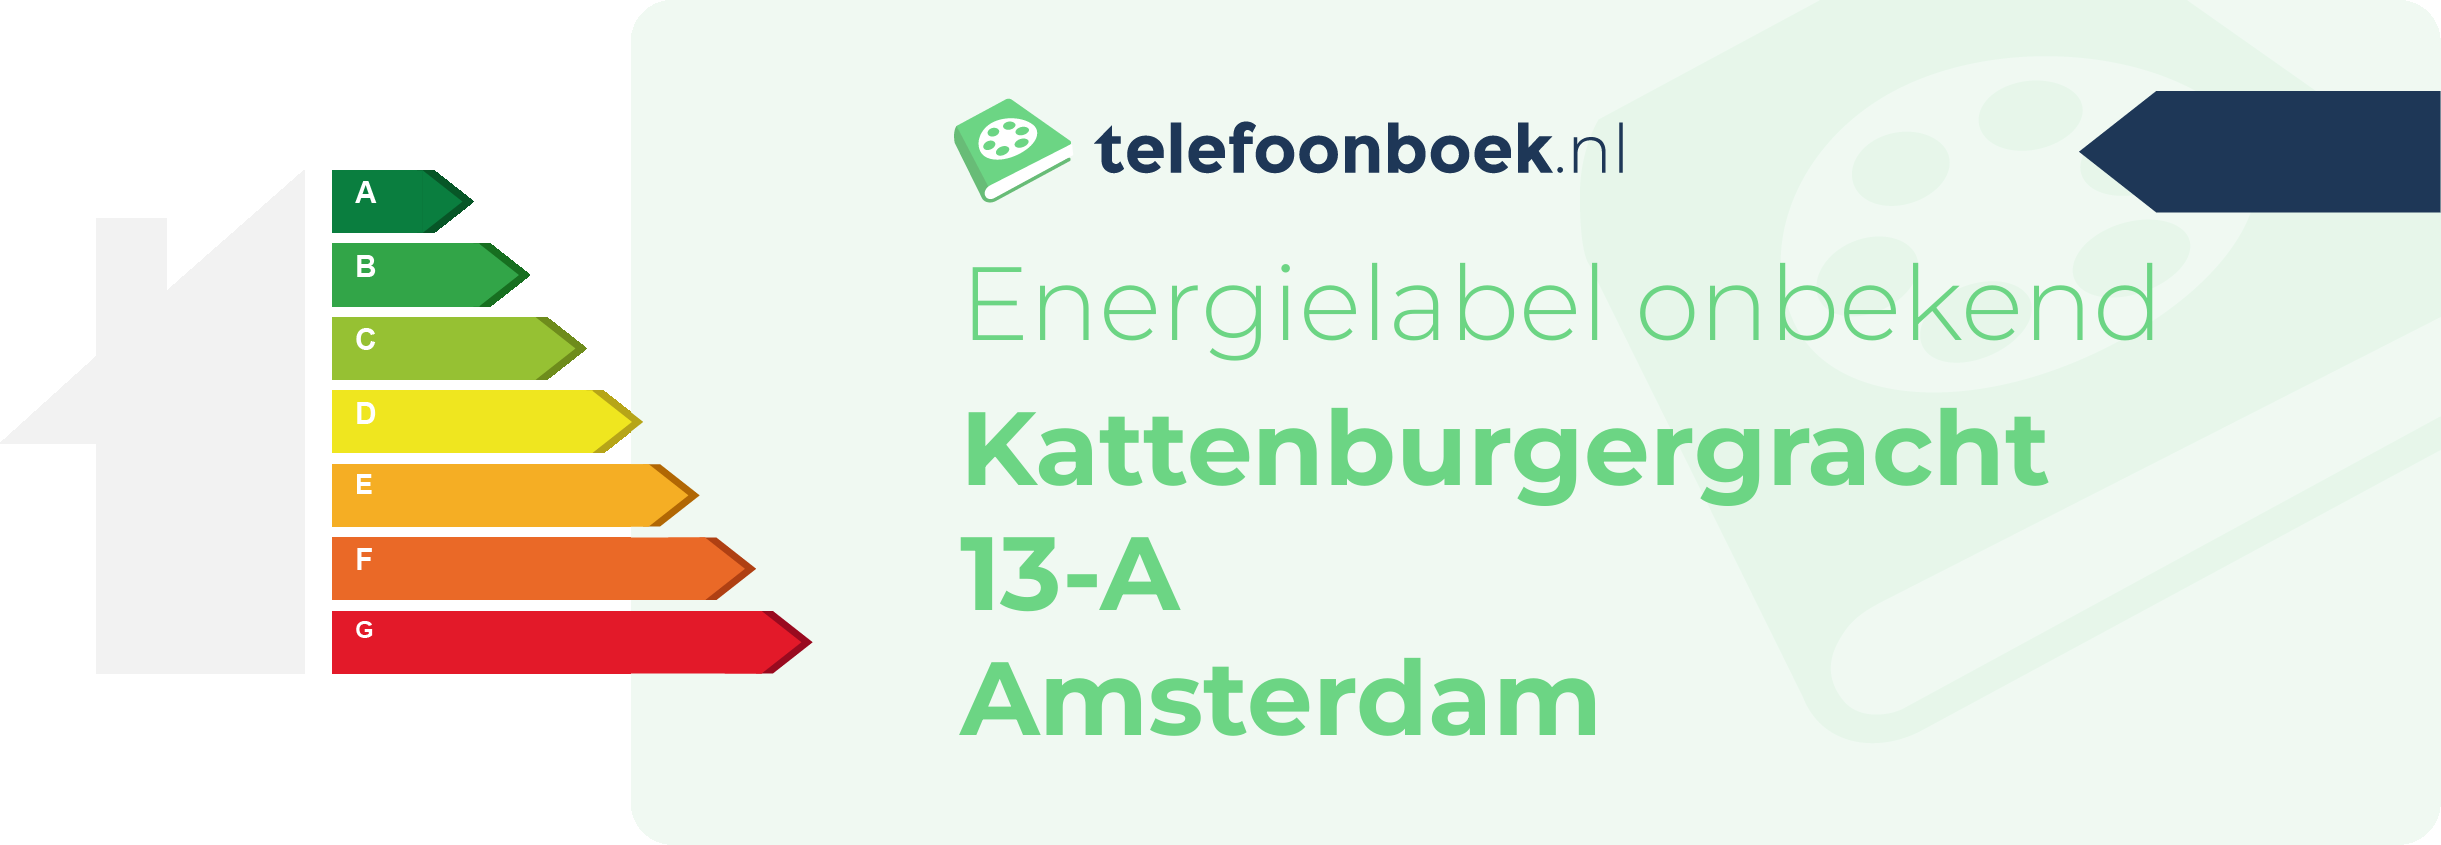 Energielabel Kattenburgergracht 13-A Amsterdam